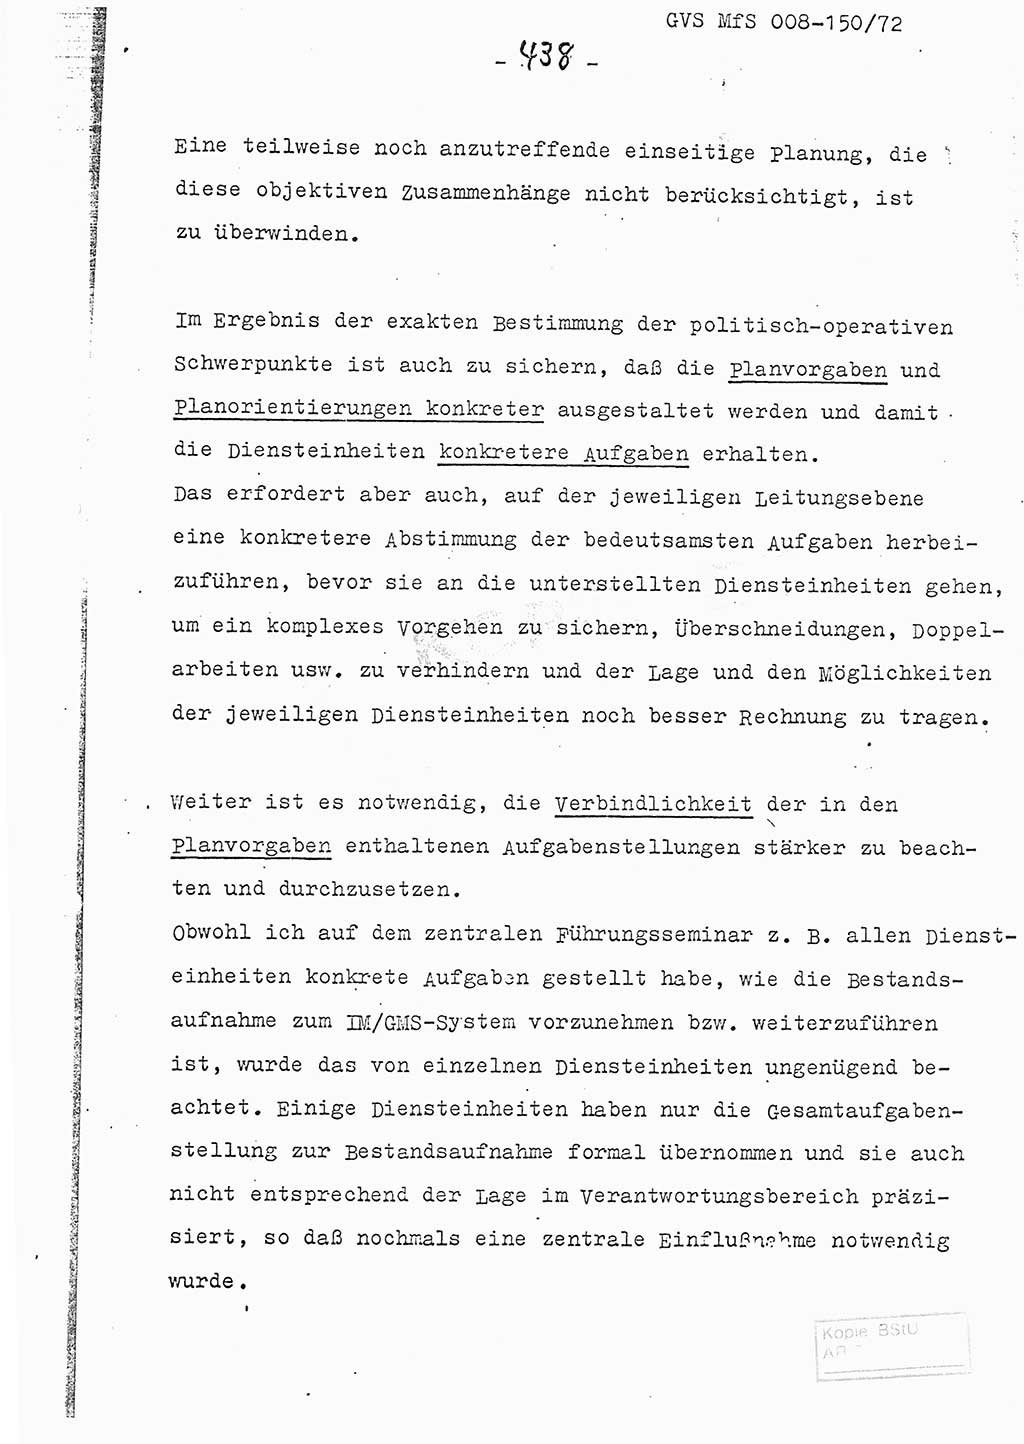 Referat (Entwurf) des Genossen Minister (Generaloberst Erich Mielke) auf der Dienstkonferenz 1972, Ministerium für Staatssicherheit (MfS) [Deutsche Demokratische Republik (DDR)], Der Minister, Geheime Verschlußsache (GVS) 008-150/72, Berlin 25.2.1972, Seite 438 (Ref. Entw. DK MfS DDR Min. GVS 008-150/72 1972, S. 438)